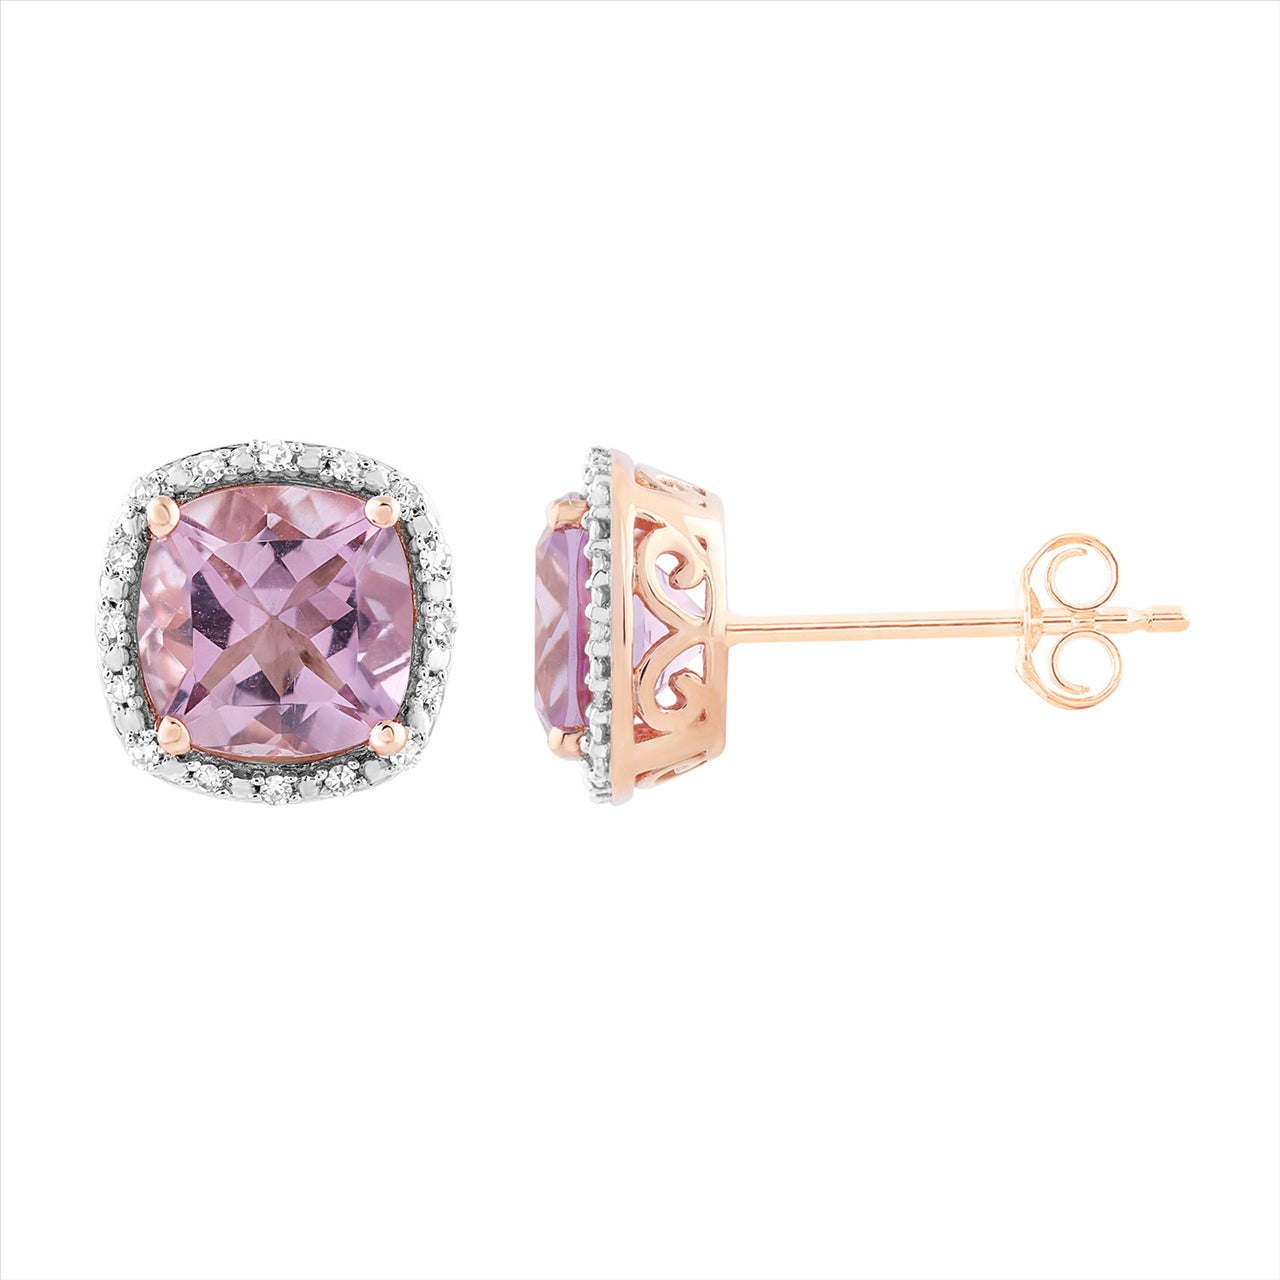 9ct R/G Diamond & Pink Amethyst Earrings